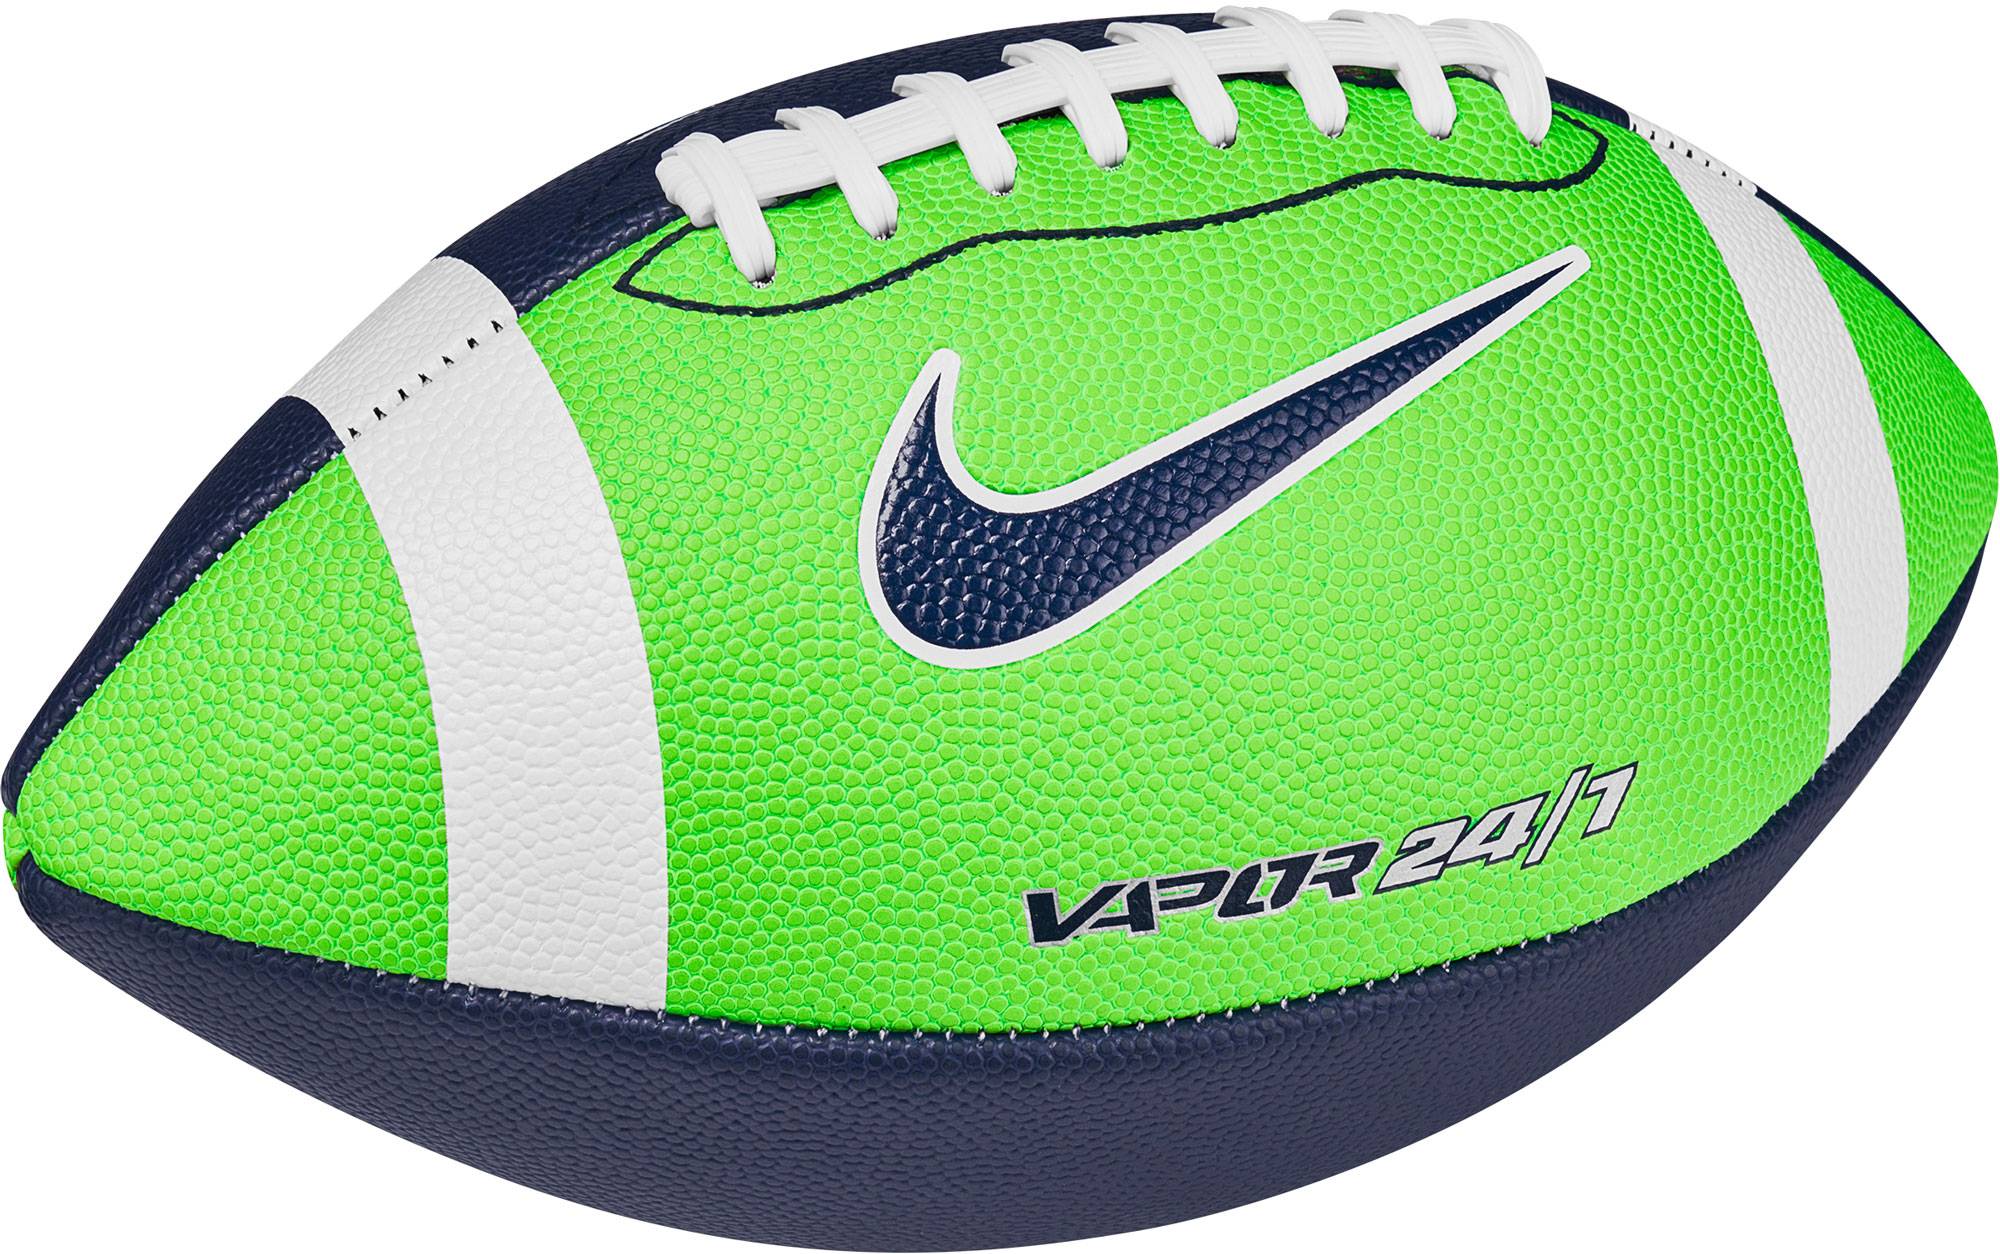 Nike Vapor 247 20 Official Football